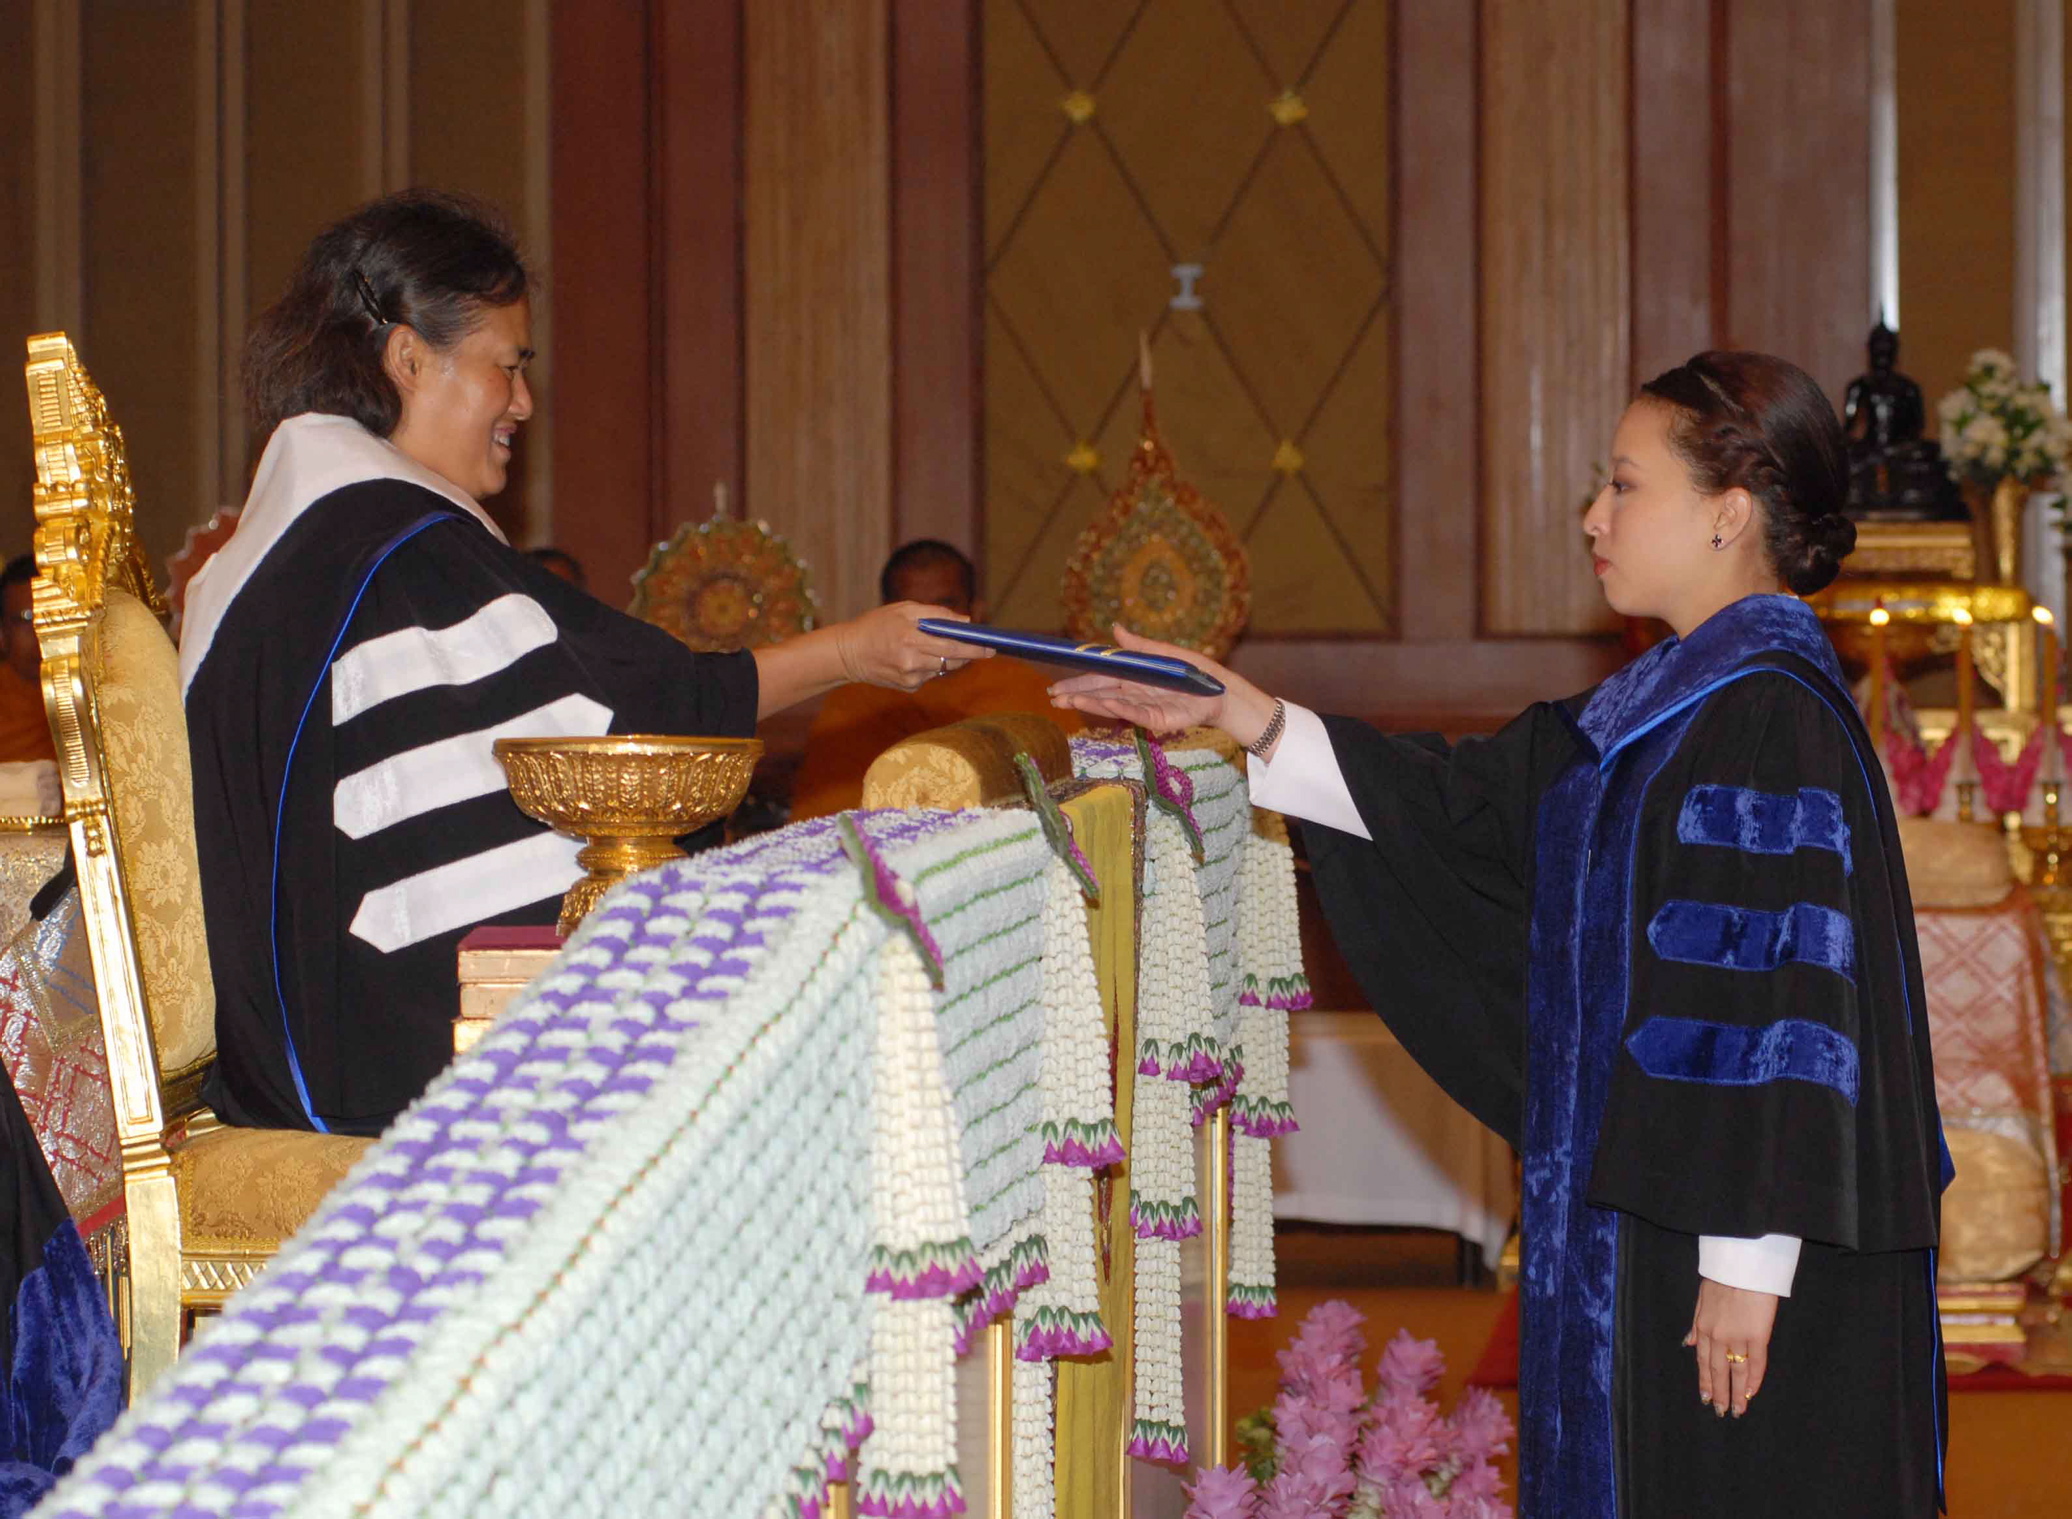 สมเด็จพระเทพรัตนราชสุดาฯ สยามบรมราชกุมารี พระราชทานปริญญาบัตรแก่ผู้สำเร็จการศึกษาจากมหาวิทยาลัยมหิดล ประจำปีการศึกษา 2551 โดยในปีนี้มหาวิทยาลัยมหิดลทูลเกล้าฯ ถวายปริญญาดุษฎีบัญฑิตกิตติมศักดิ์ สาขาอาชญาวิทยาการบริหารงานยุติธรรมและสังคม แด่พระเจ้าหลานเธอ พระองค์เจ้าพัชรกิติยาภา ณ อาคารชุมพรเขตอุดมศักดิ์ หอประชุมกองทัพเรือ เมื่อ 6 ก.ค.